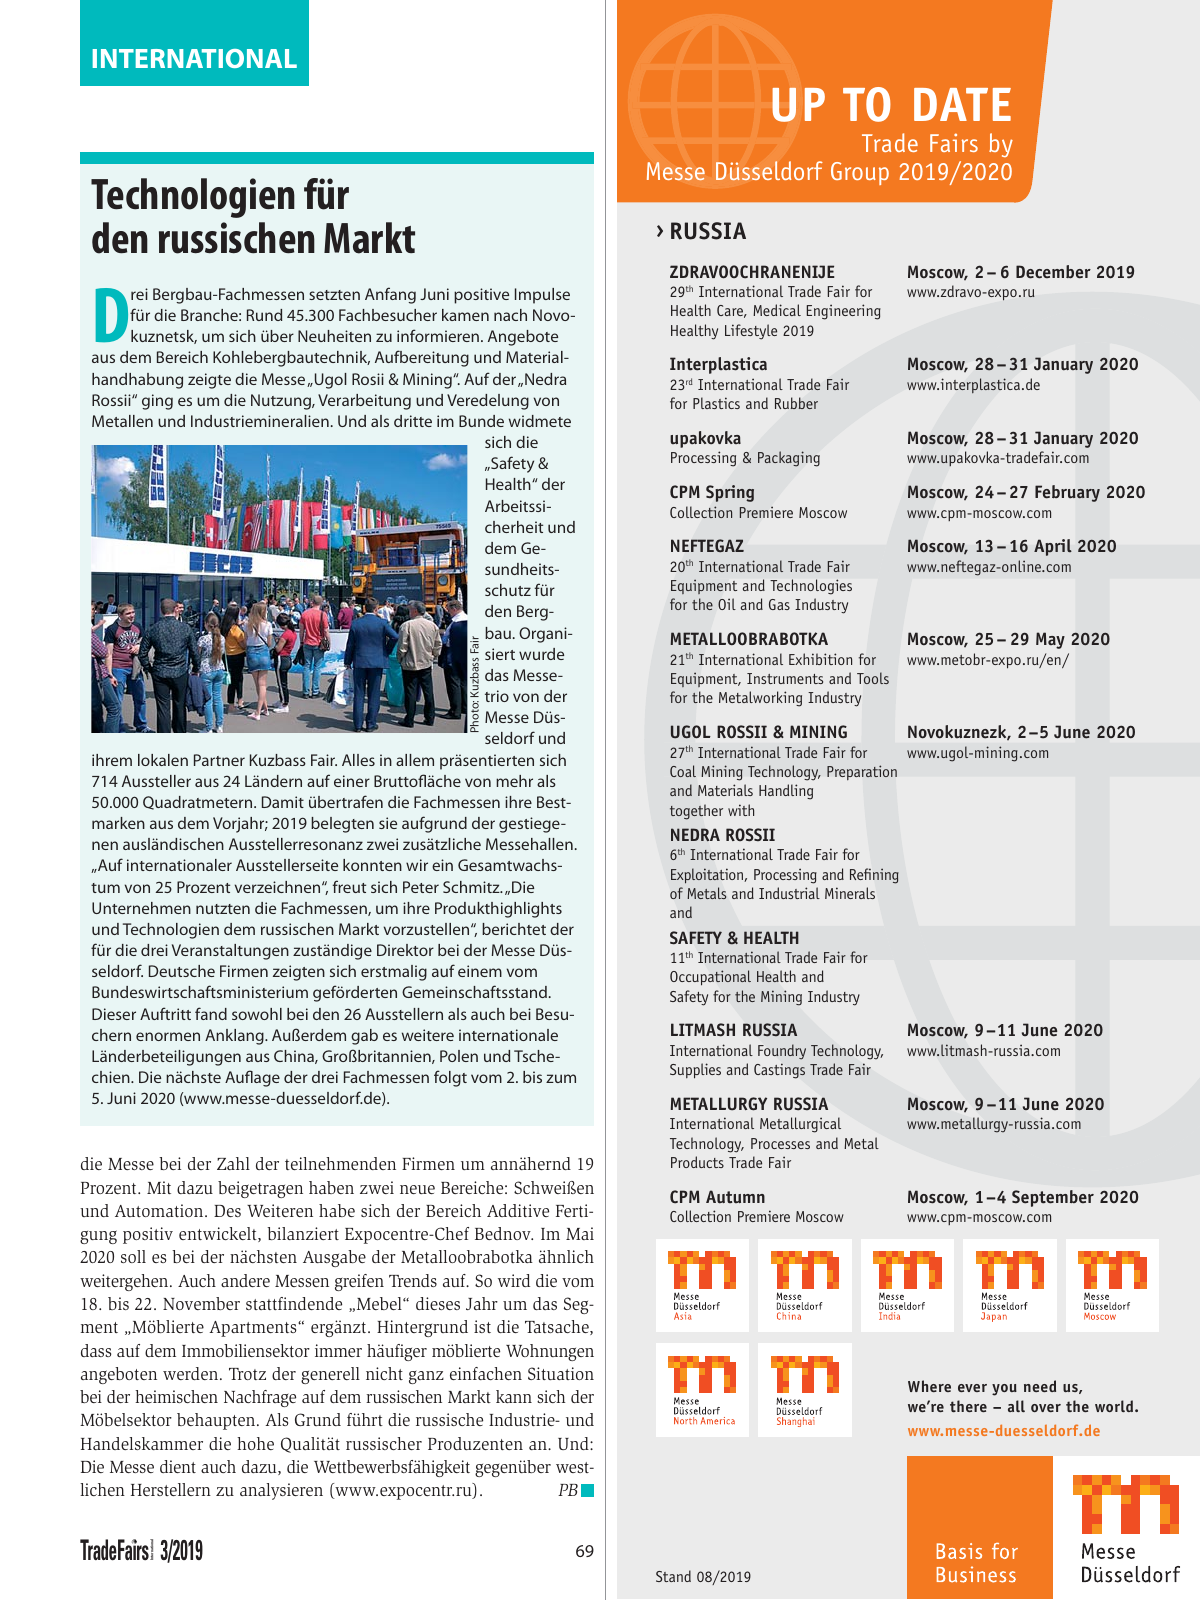 Vorschau TFI Trade-Fairs-International 03/2019 Seite 69